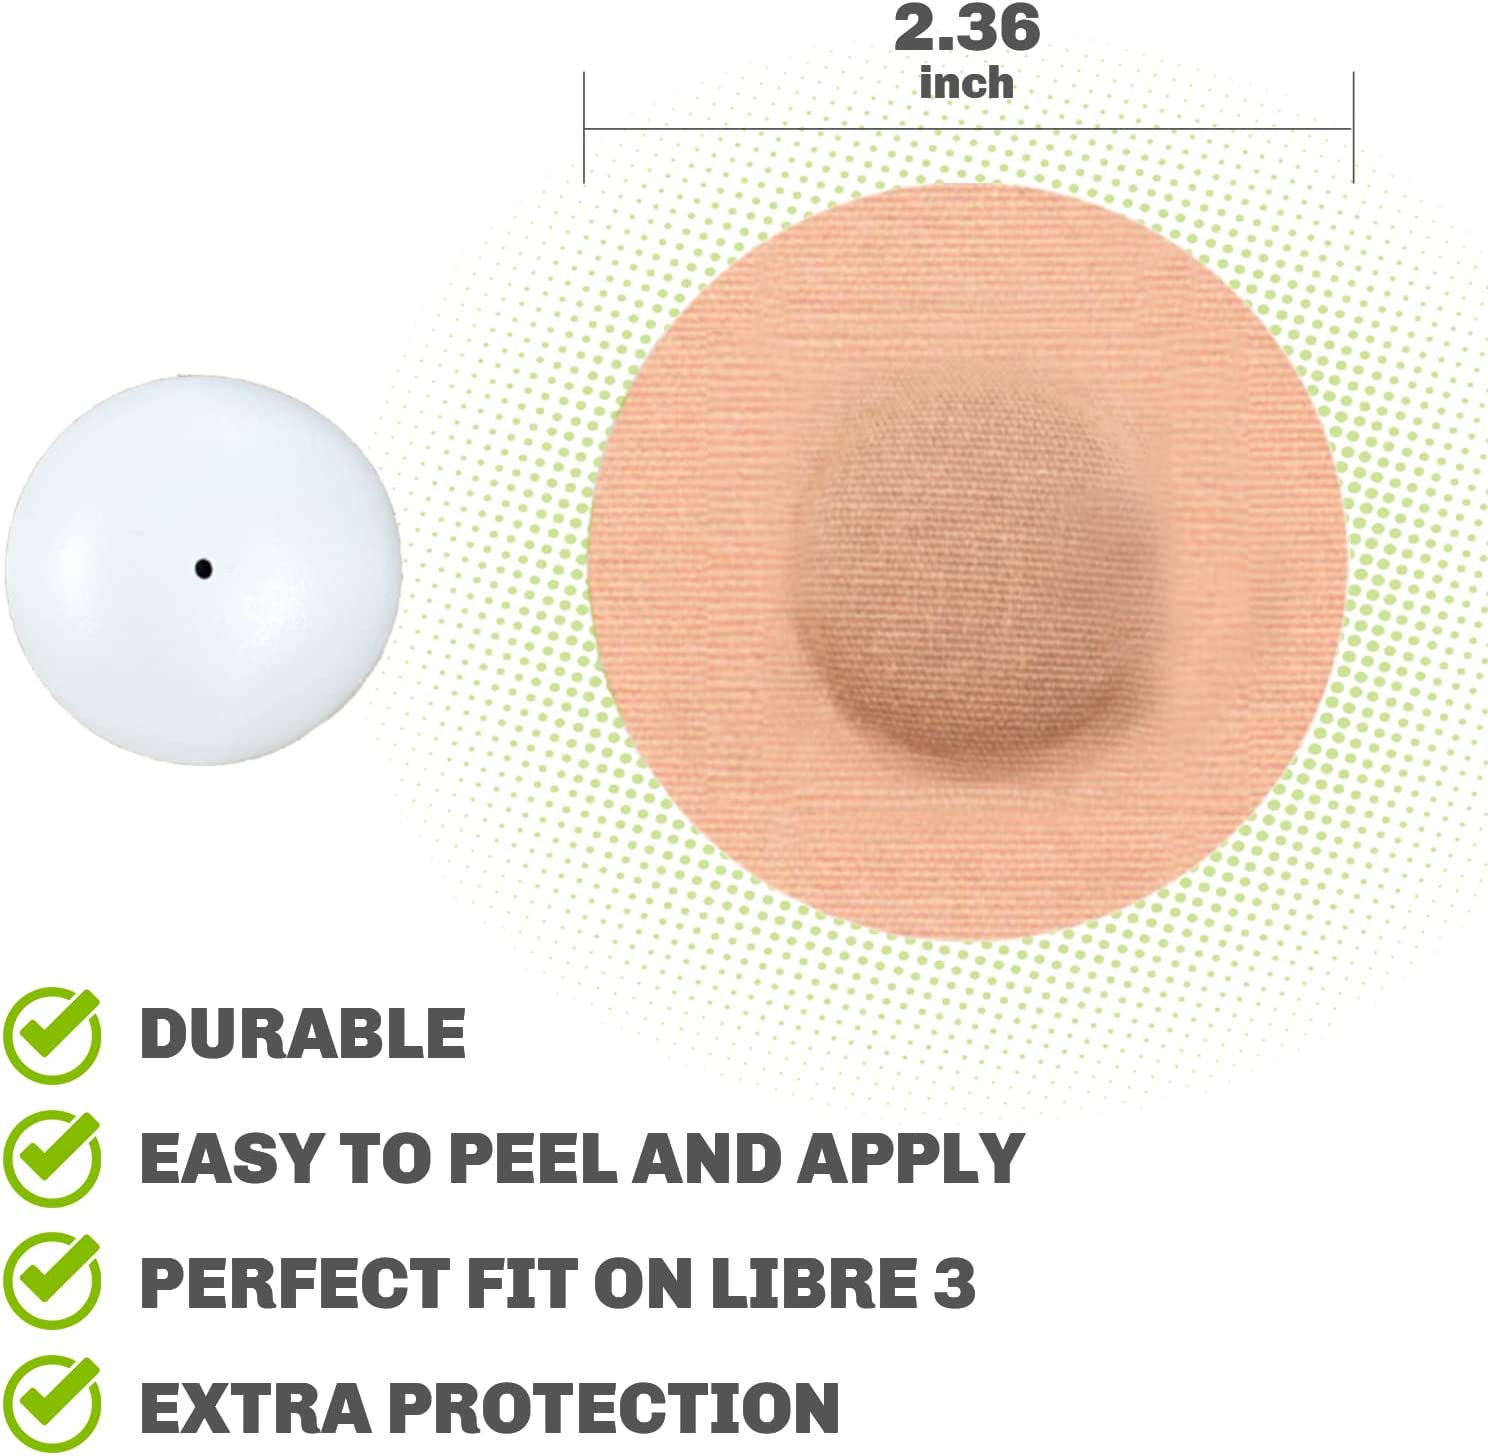 Sensor Covers for Libre 3, 25 Pack, Tan, Premium Pack